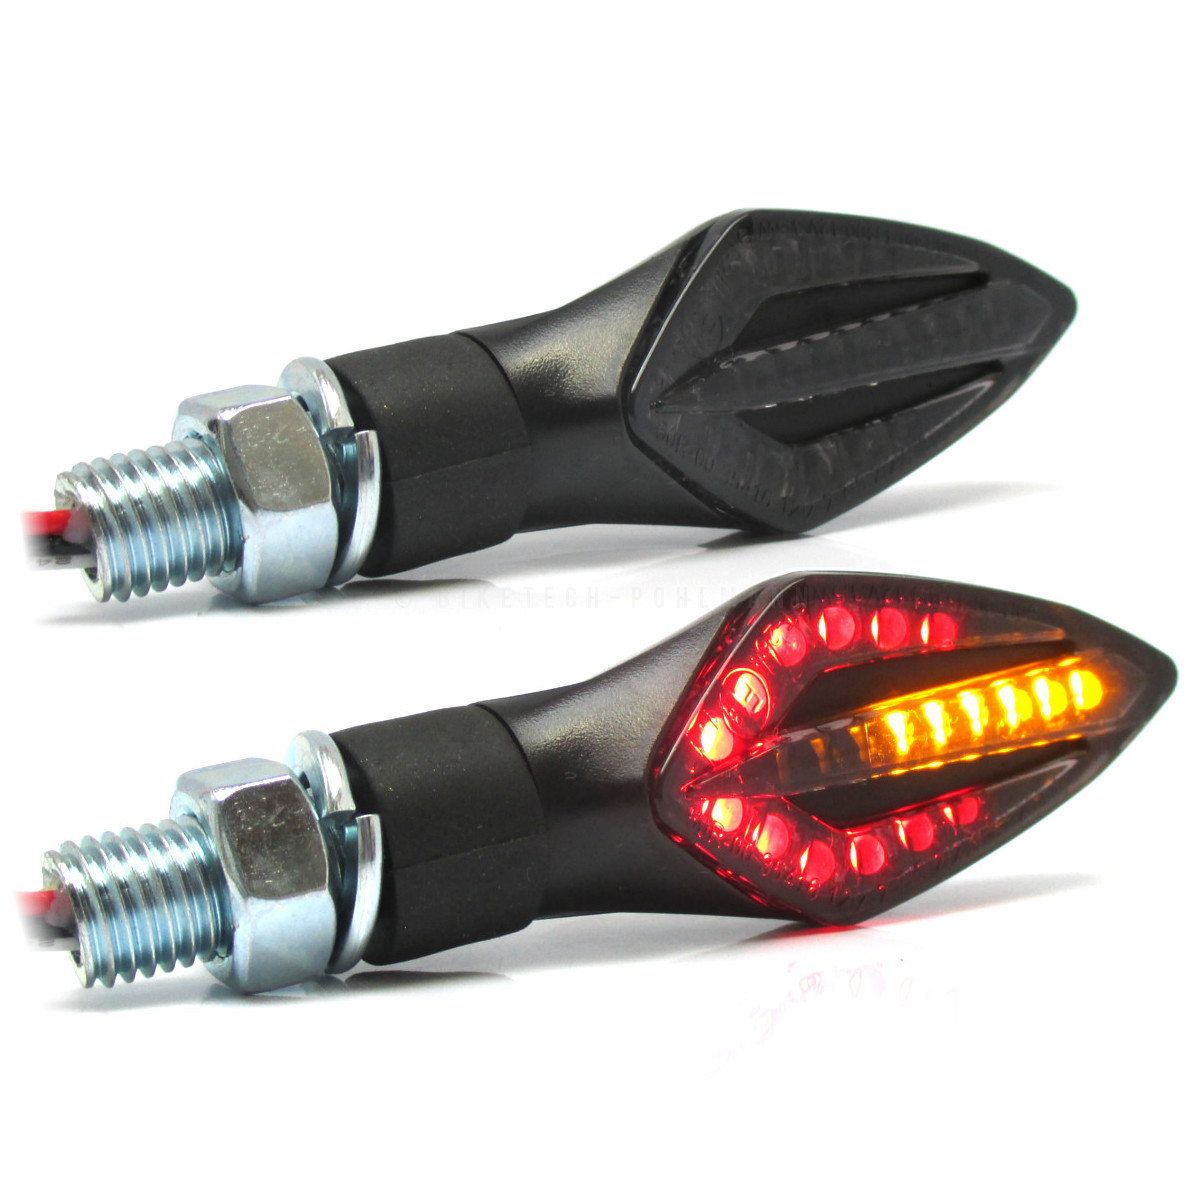 Hochwertige LED-Blinker mit Lauflicht und mattschwarzem